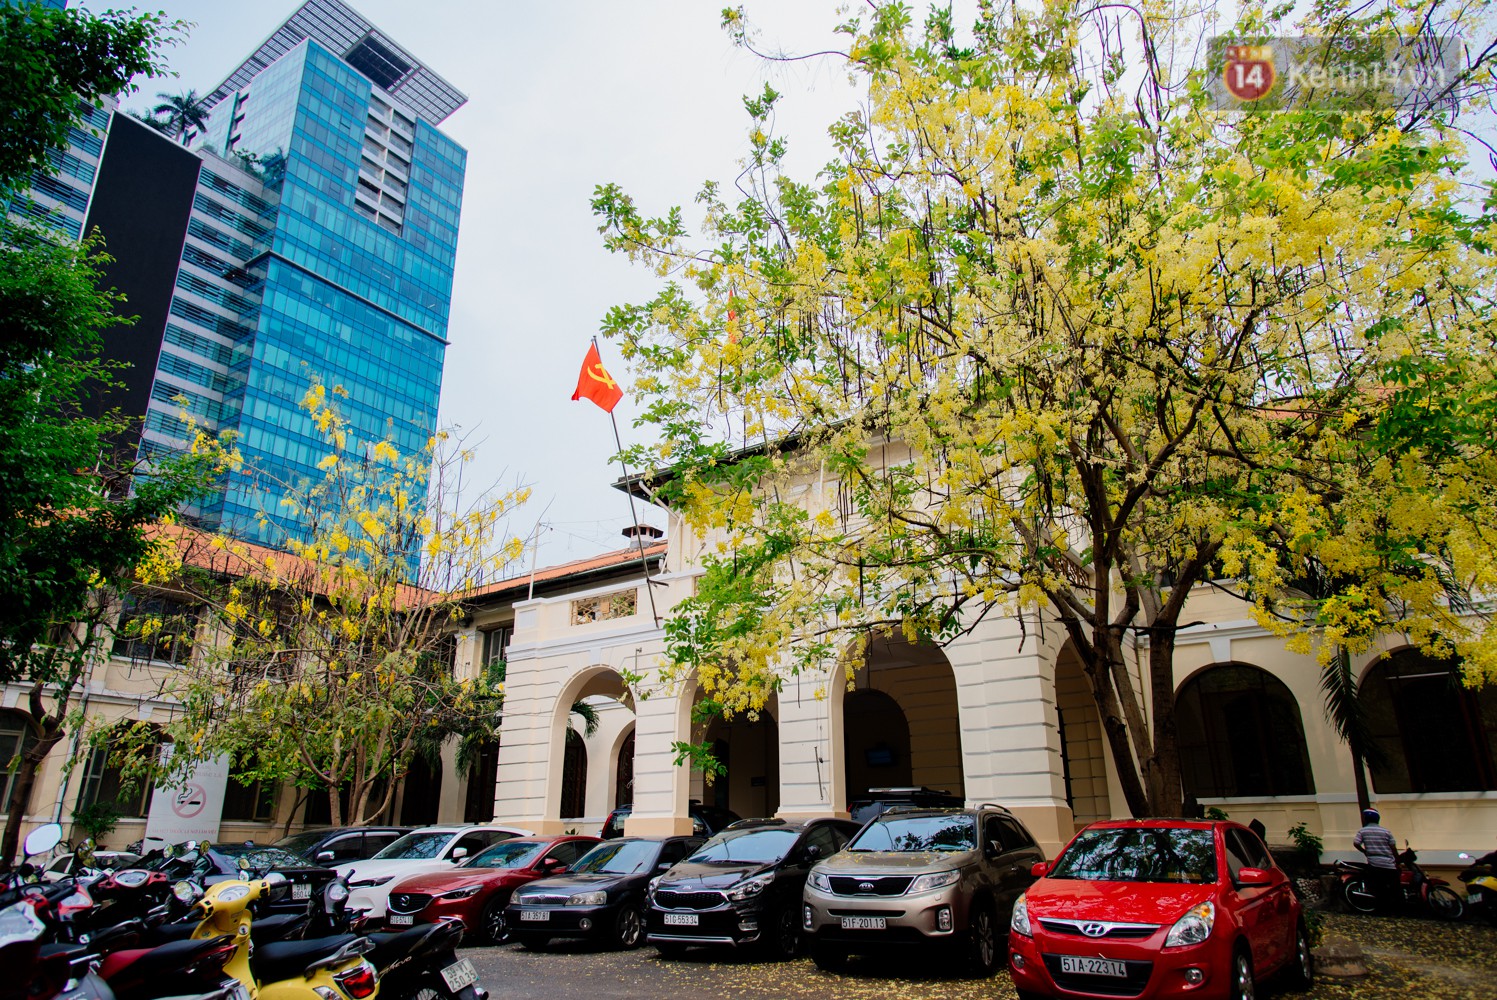 Người Sài Gòn bày tỏ tiếc nuối trước đề án tháo dỡ Dinh Thượng Thơ 130 năm tuổi để nâng cấp trụ sở UBND và HĐND TP.HCM - Ảnh 5.